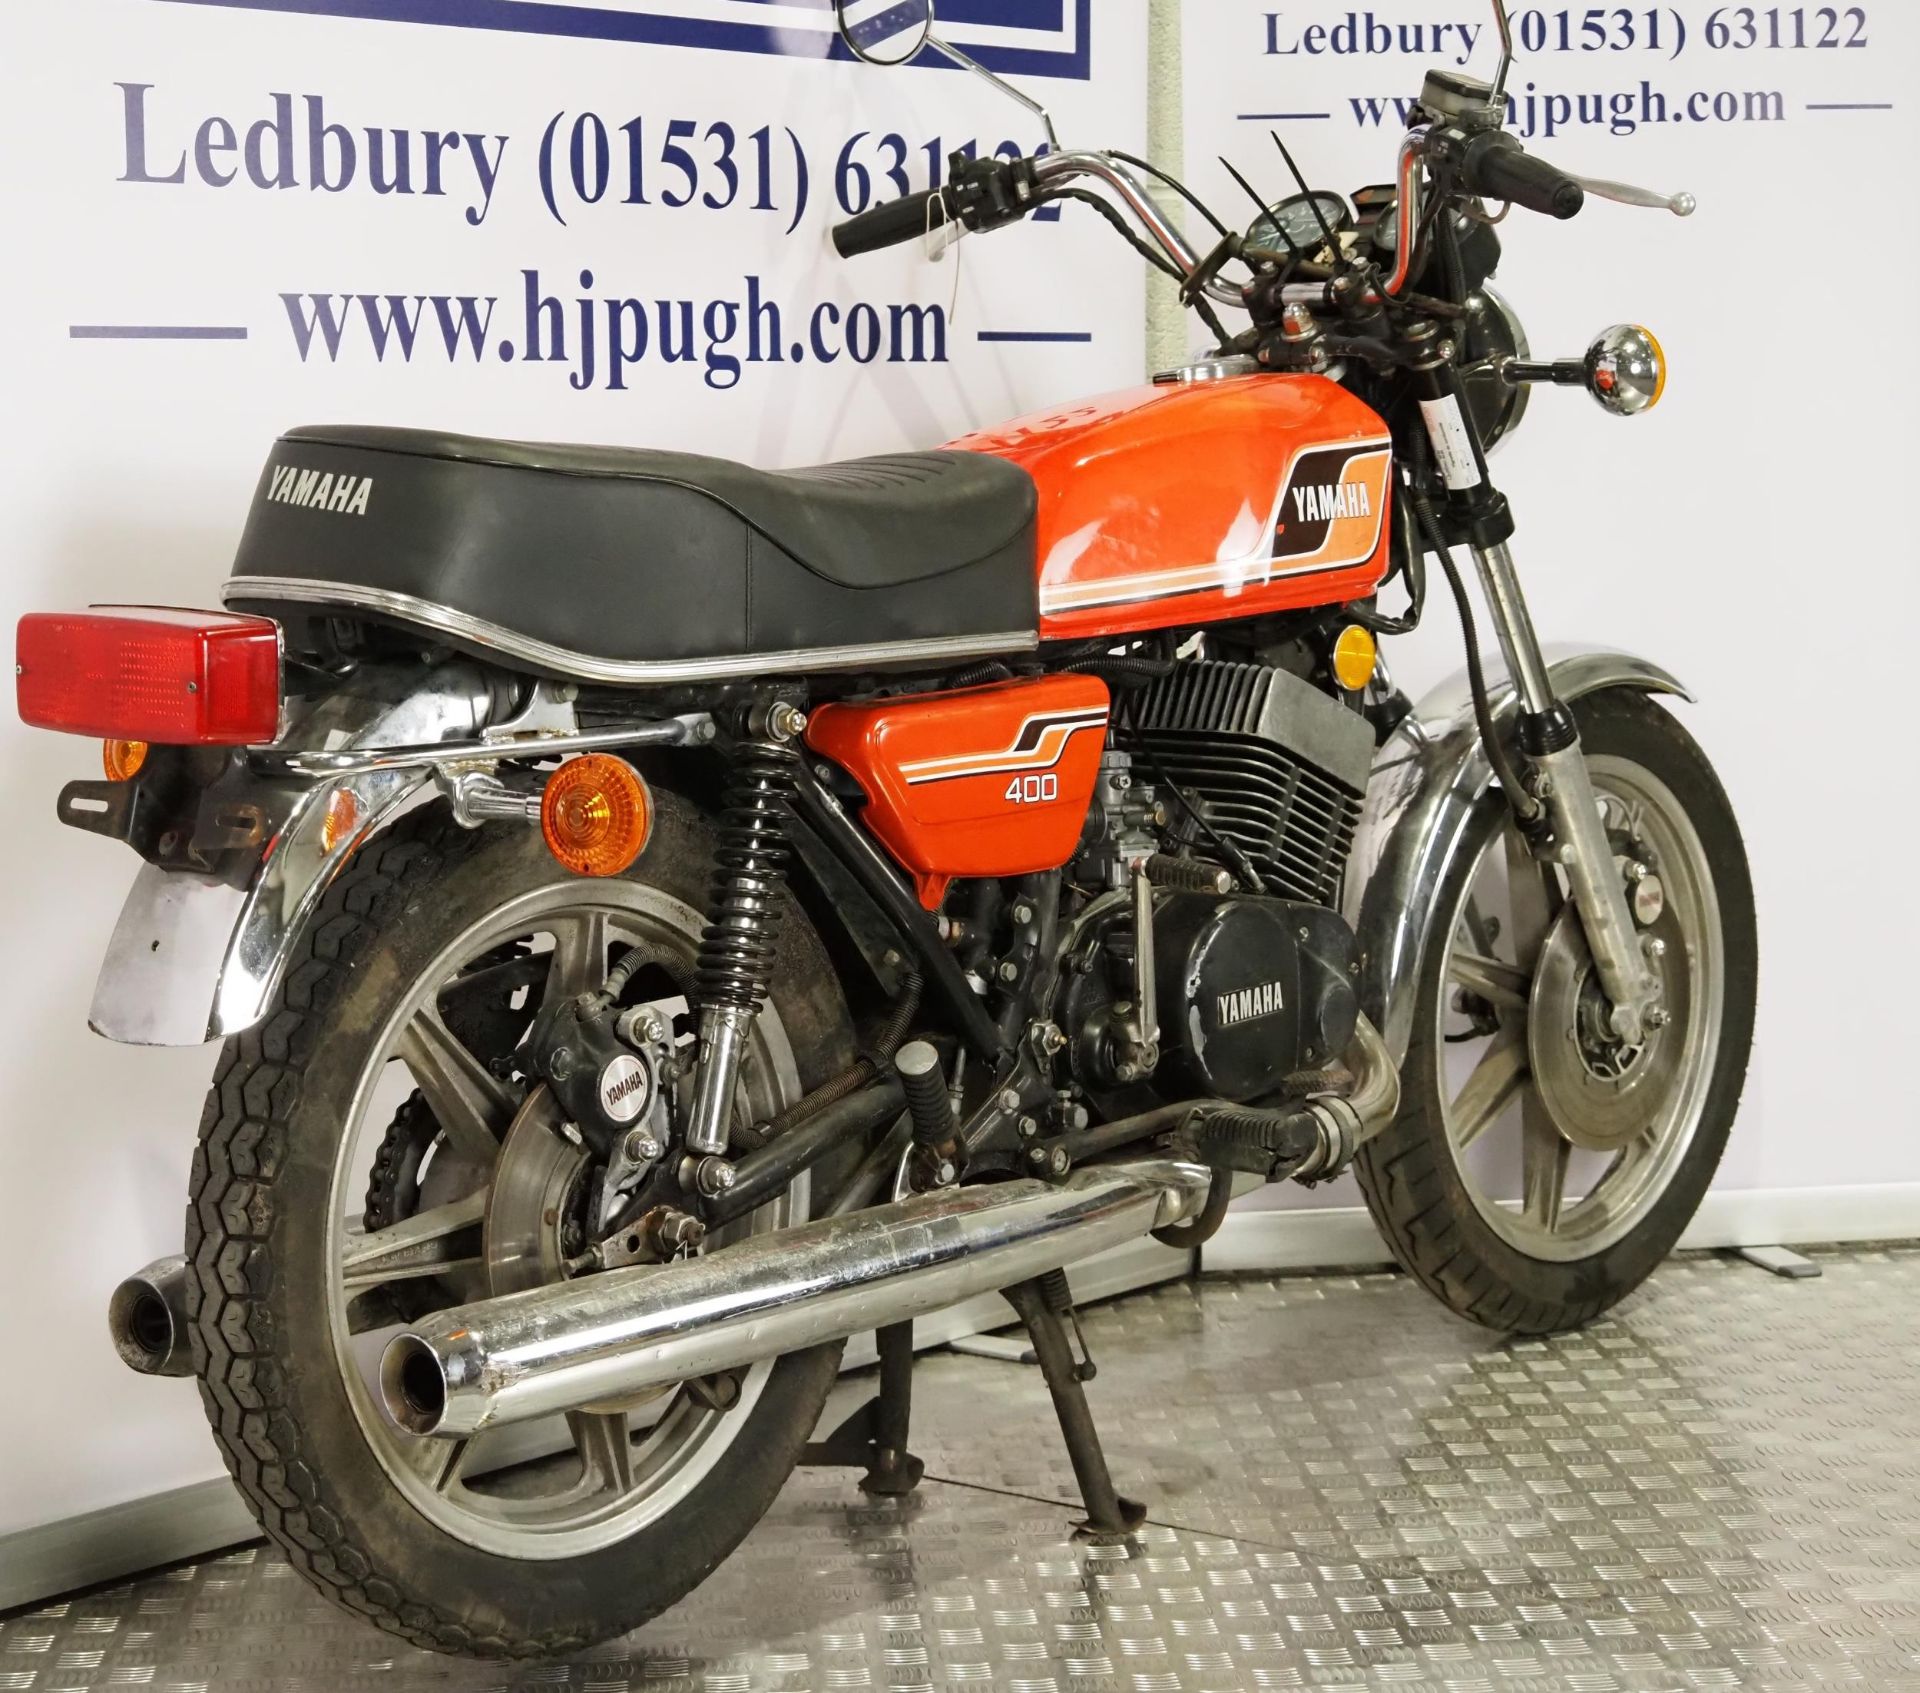 Yamaha RD400 motorcycle. 1976. 399cc. Frame No. 1A1008827 Engine No. 1A1-308468 Runs and rides. - Image 3 of 6